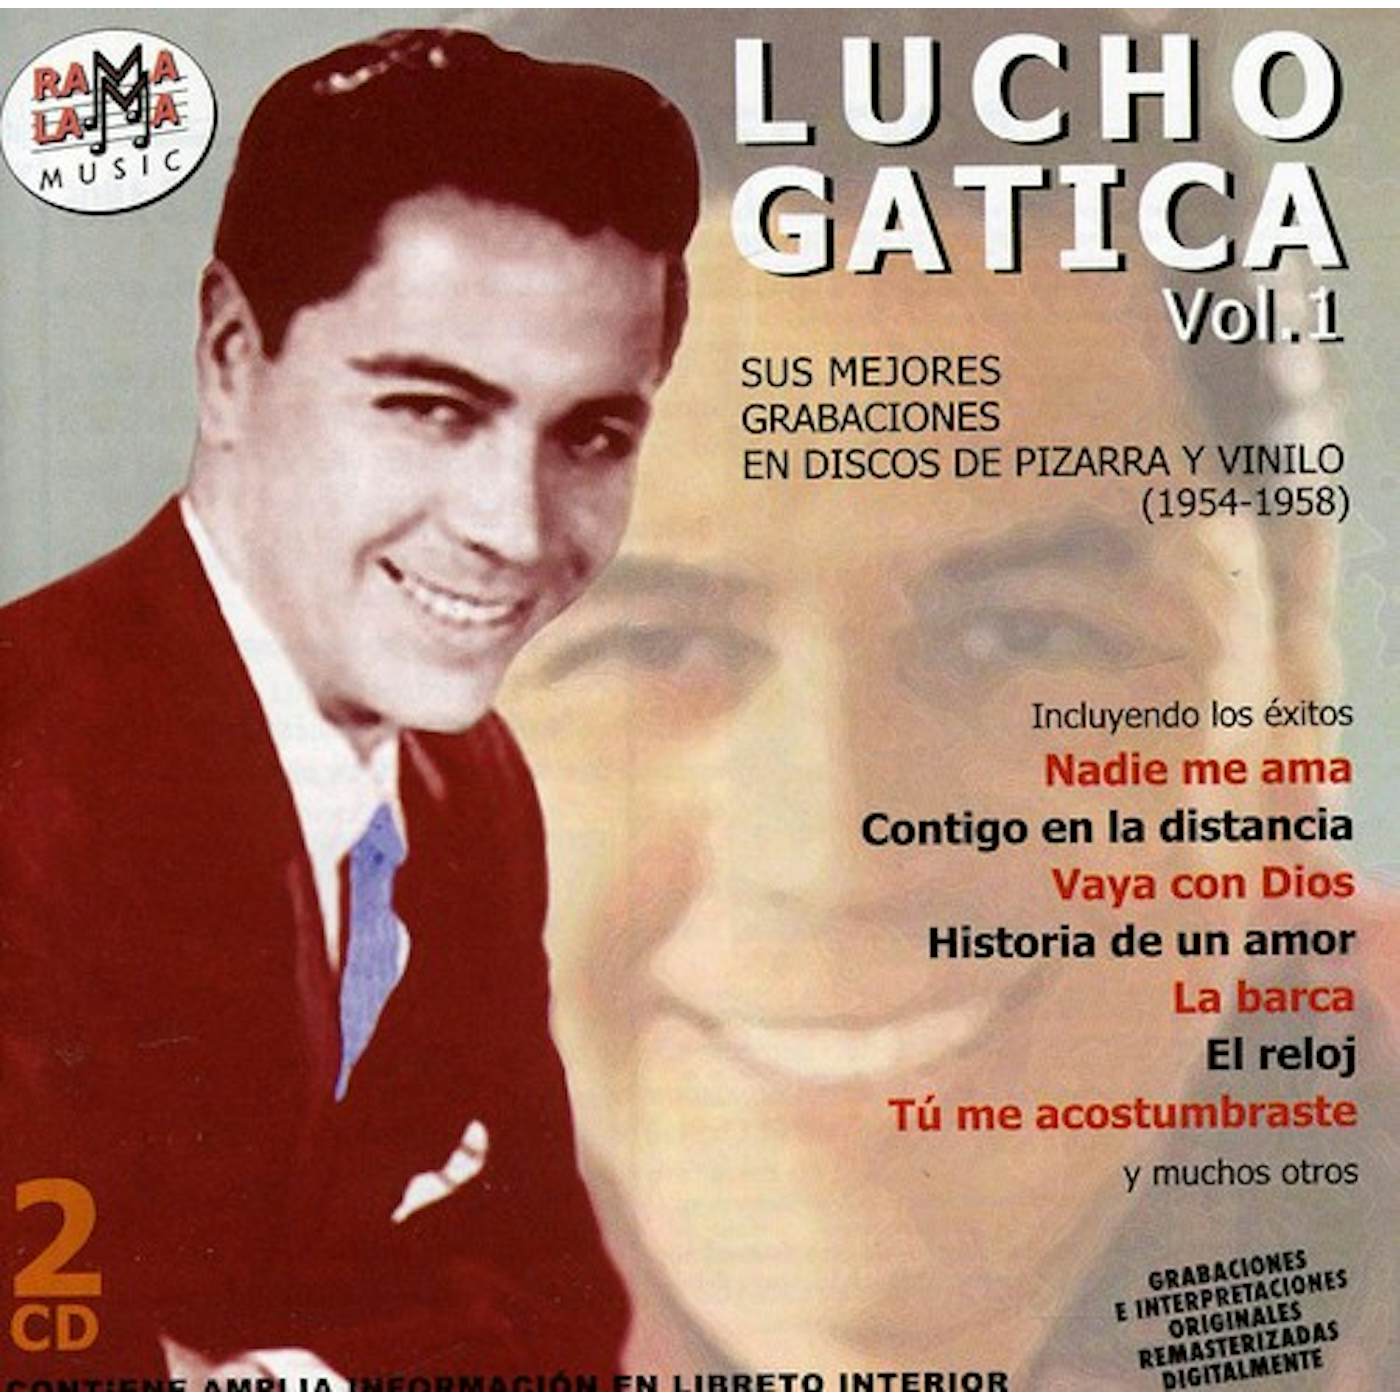 Lucho Gatica VOL 1 SUS MEJORES GRABACIONES 1954-1958 CD